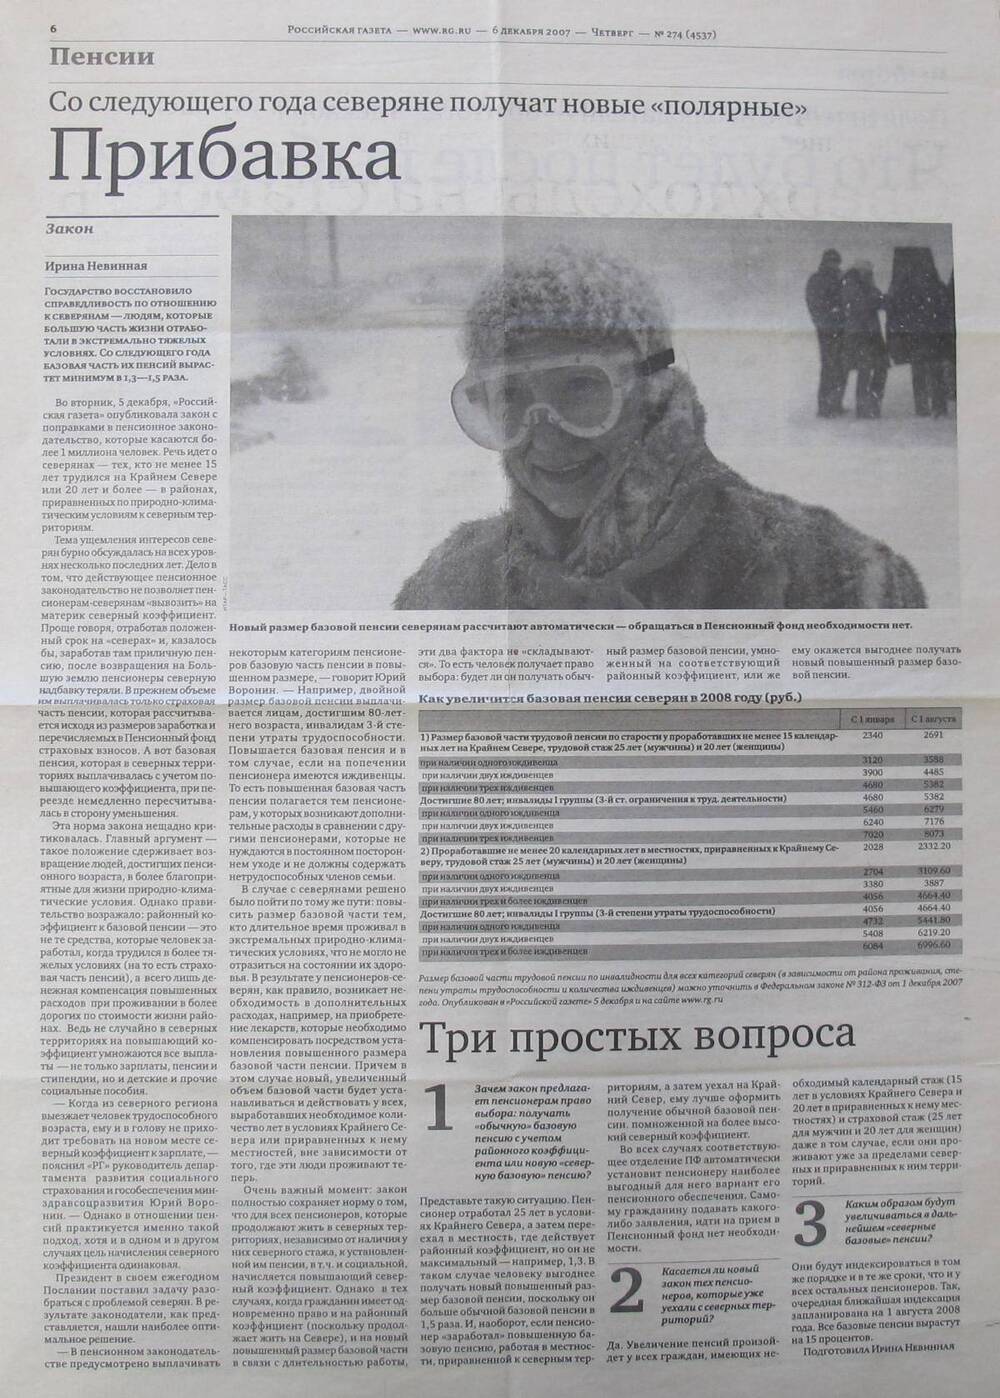 Вырезка из газеты Российская газета № 274 (4537) 06.12.2007 г.